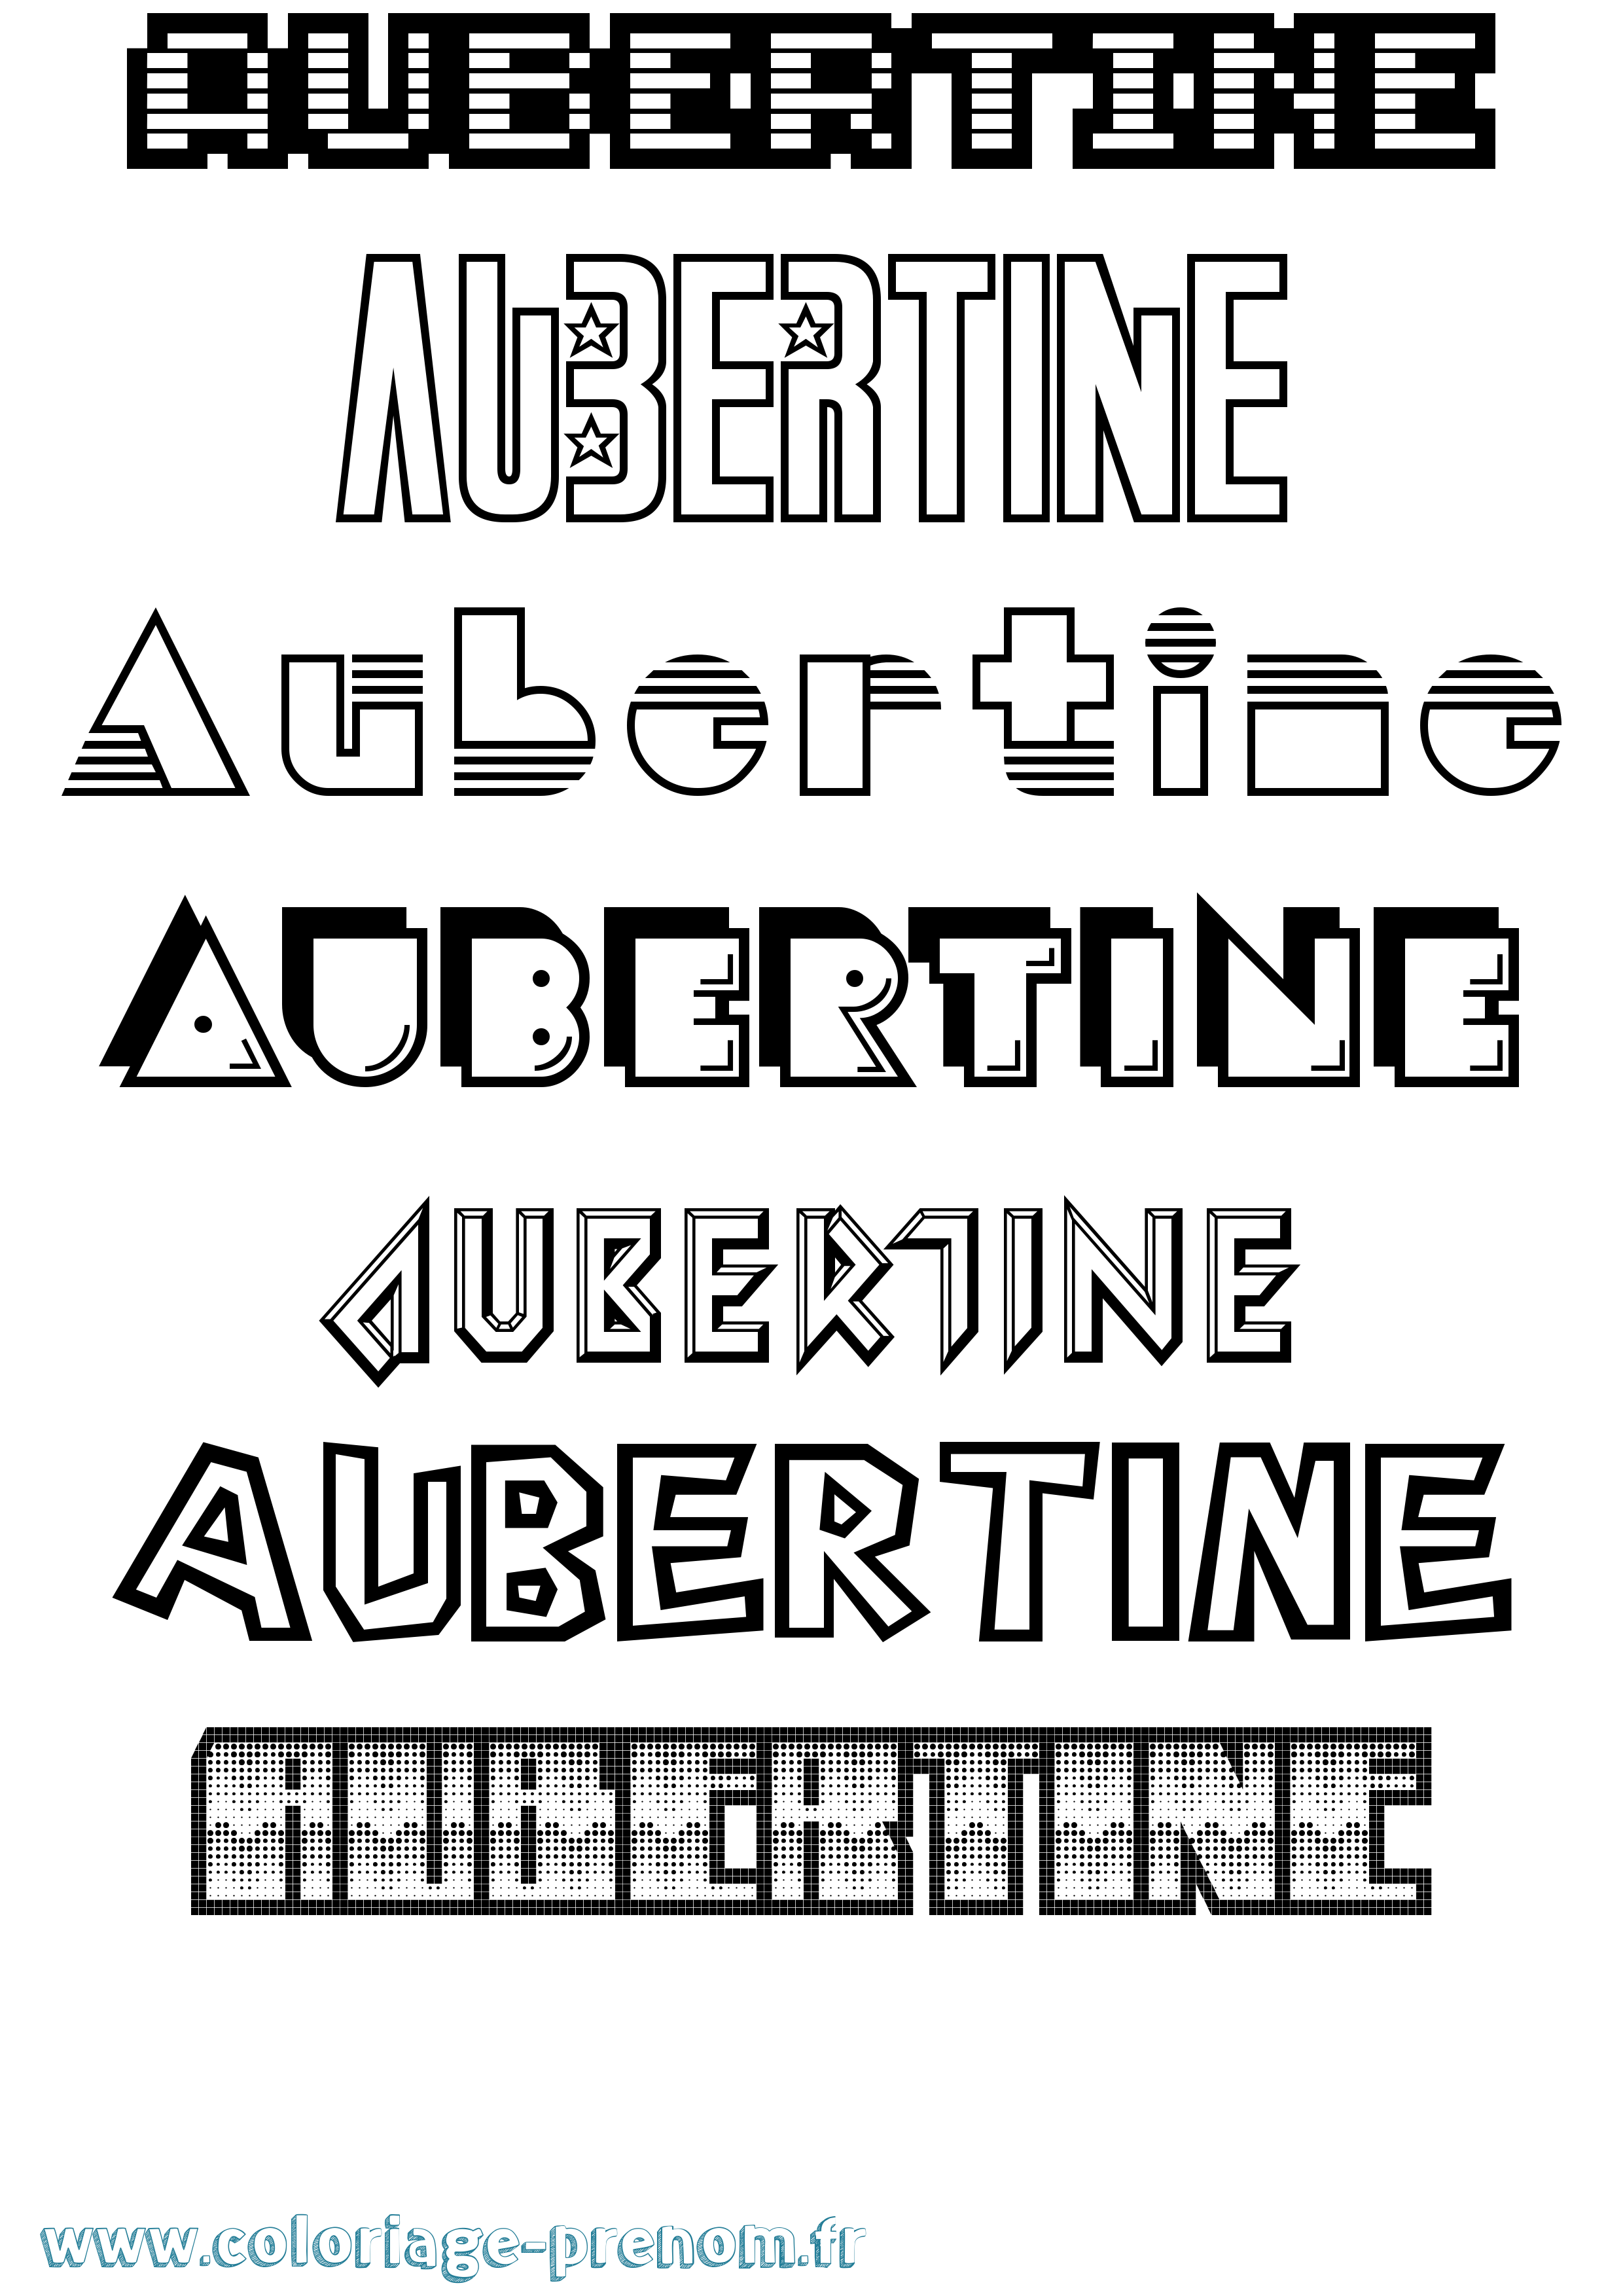 Coloriage prénom Aubertine Jeux Vidéos